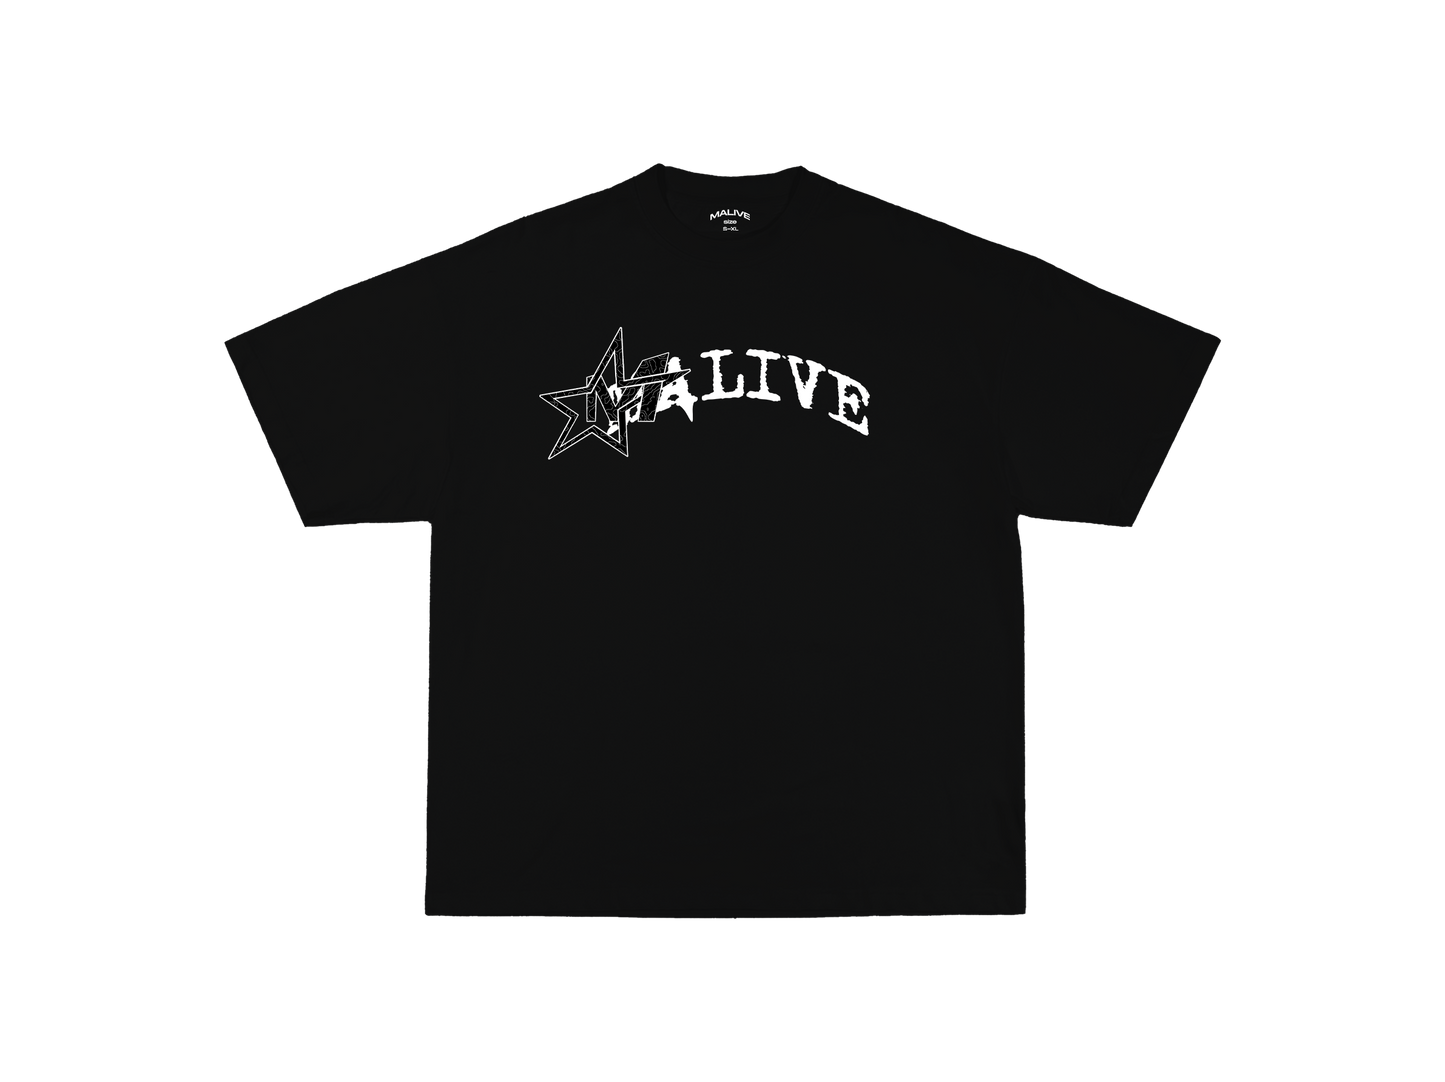 Malive Type4 T-Shirt